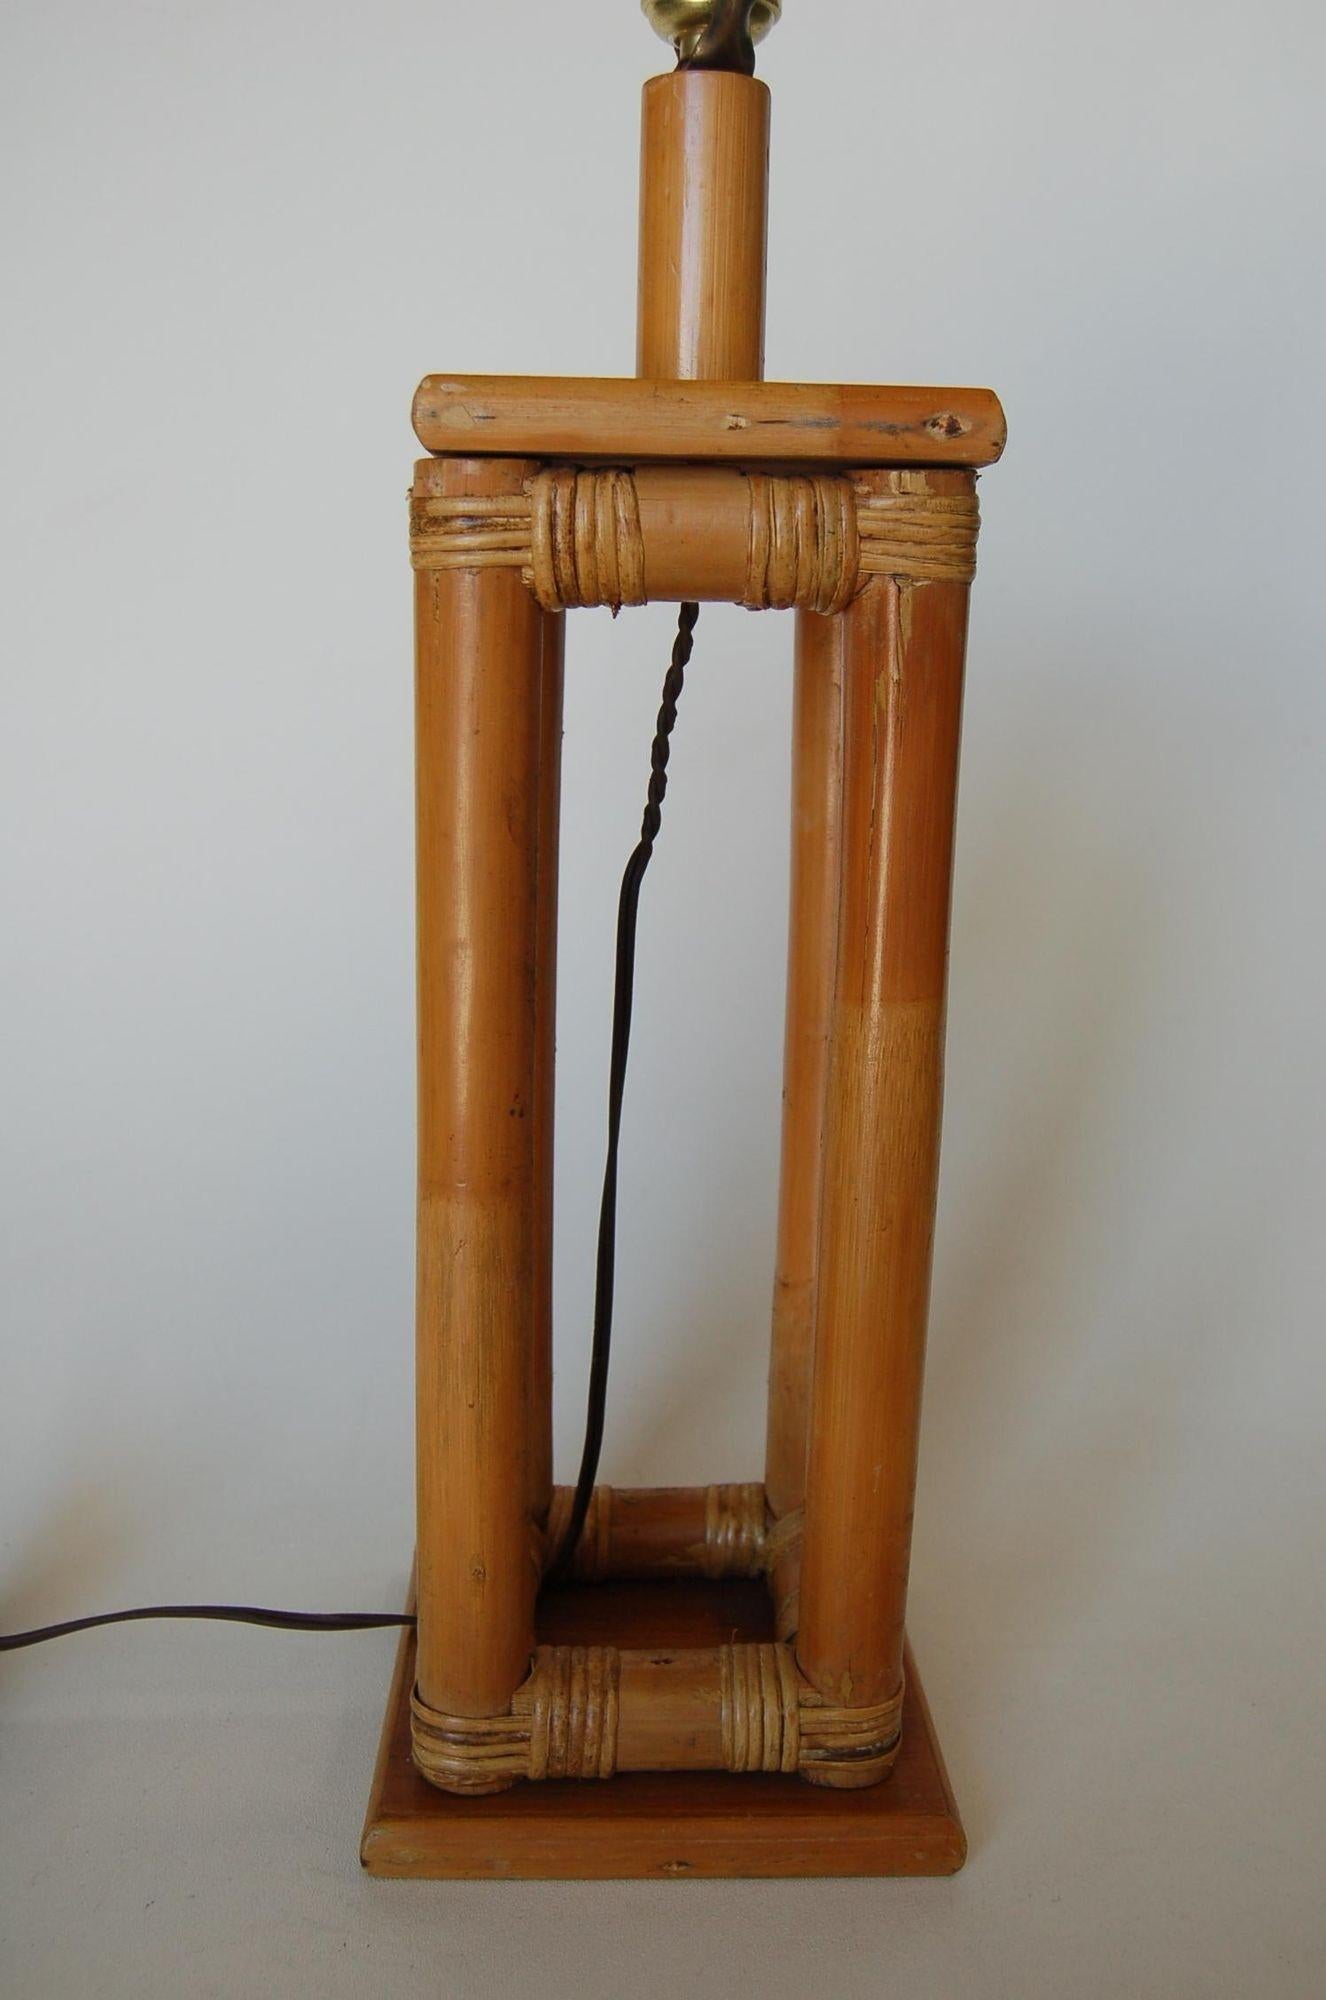 Restaurierte Rattan-Pao-Tischlampe aus der Mitte des Jahrhunderts in Kastenform, befestigt an einem quadratischen Holzsockel

1950, Vereinigte Staaten

Maße: 6,5